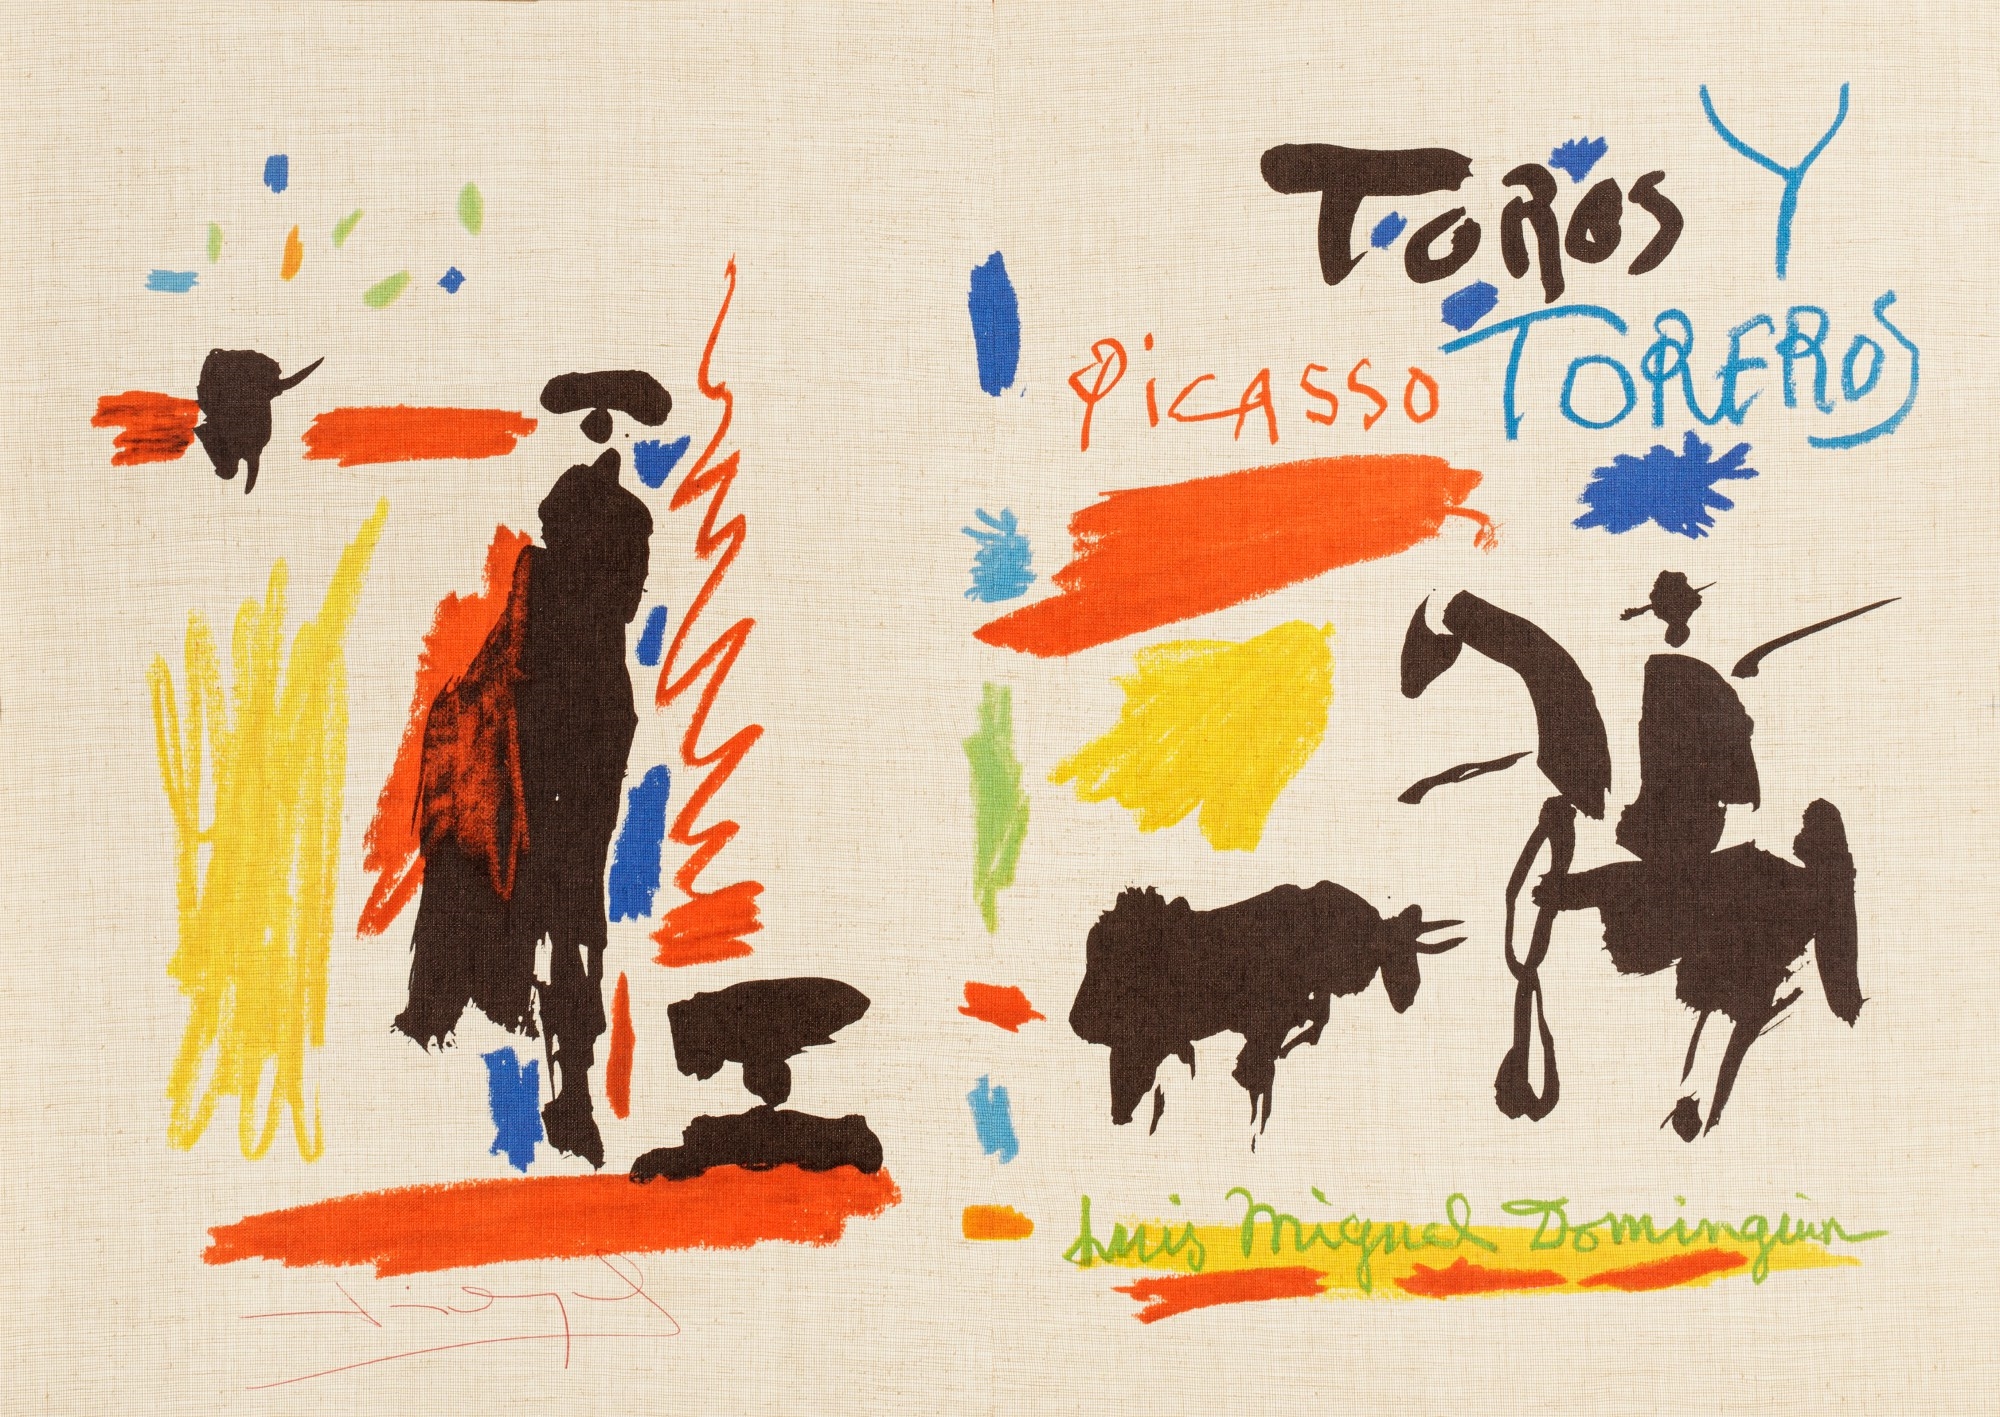 Toros y toreros by Pablo Picasso